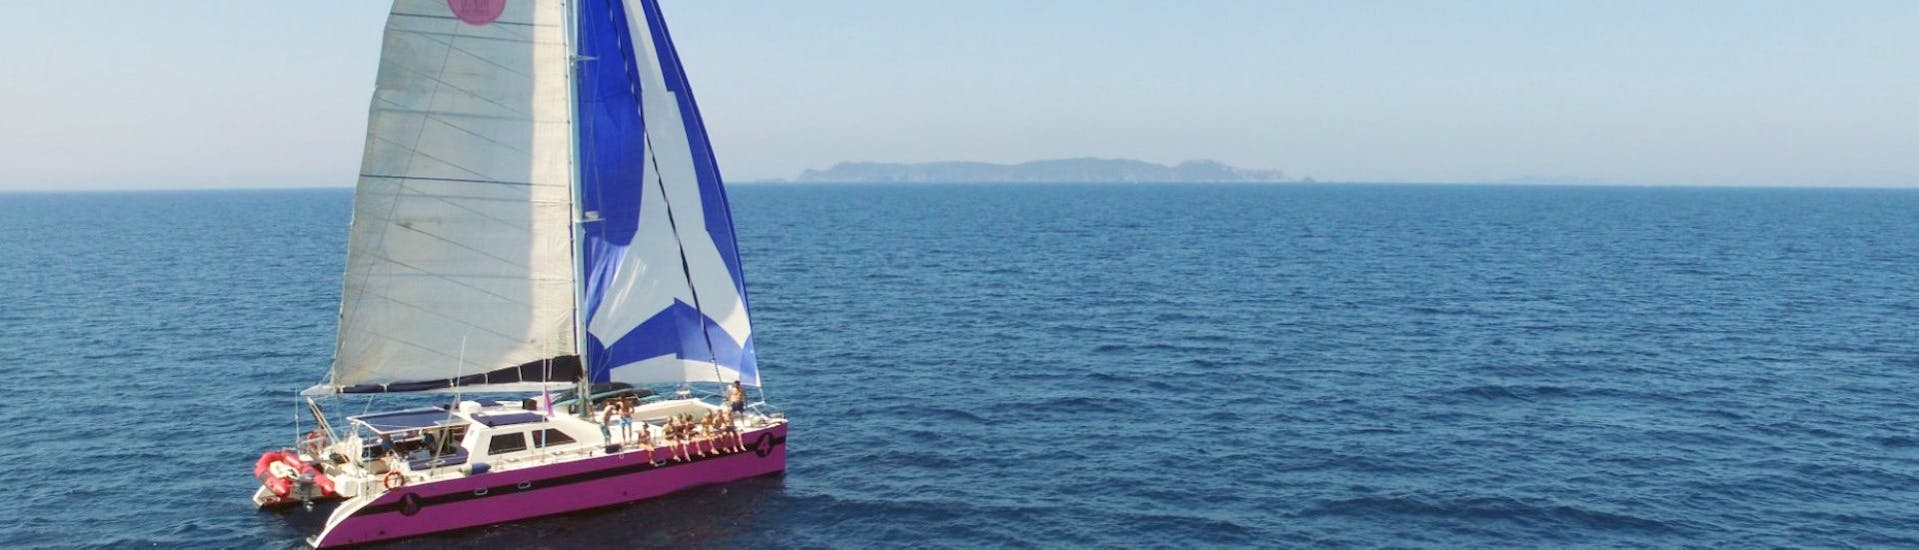 Uitzicht tijdens de Party Catamarantocht in de Golf van Saint-Tropez met Caseneuve Maxi Catamaran.